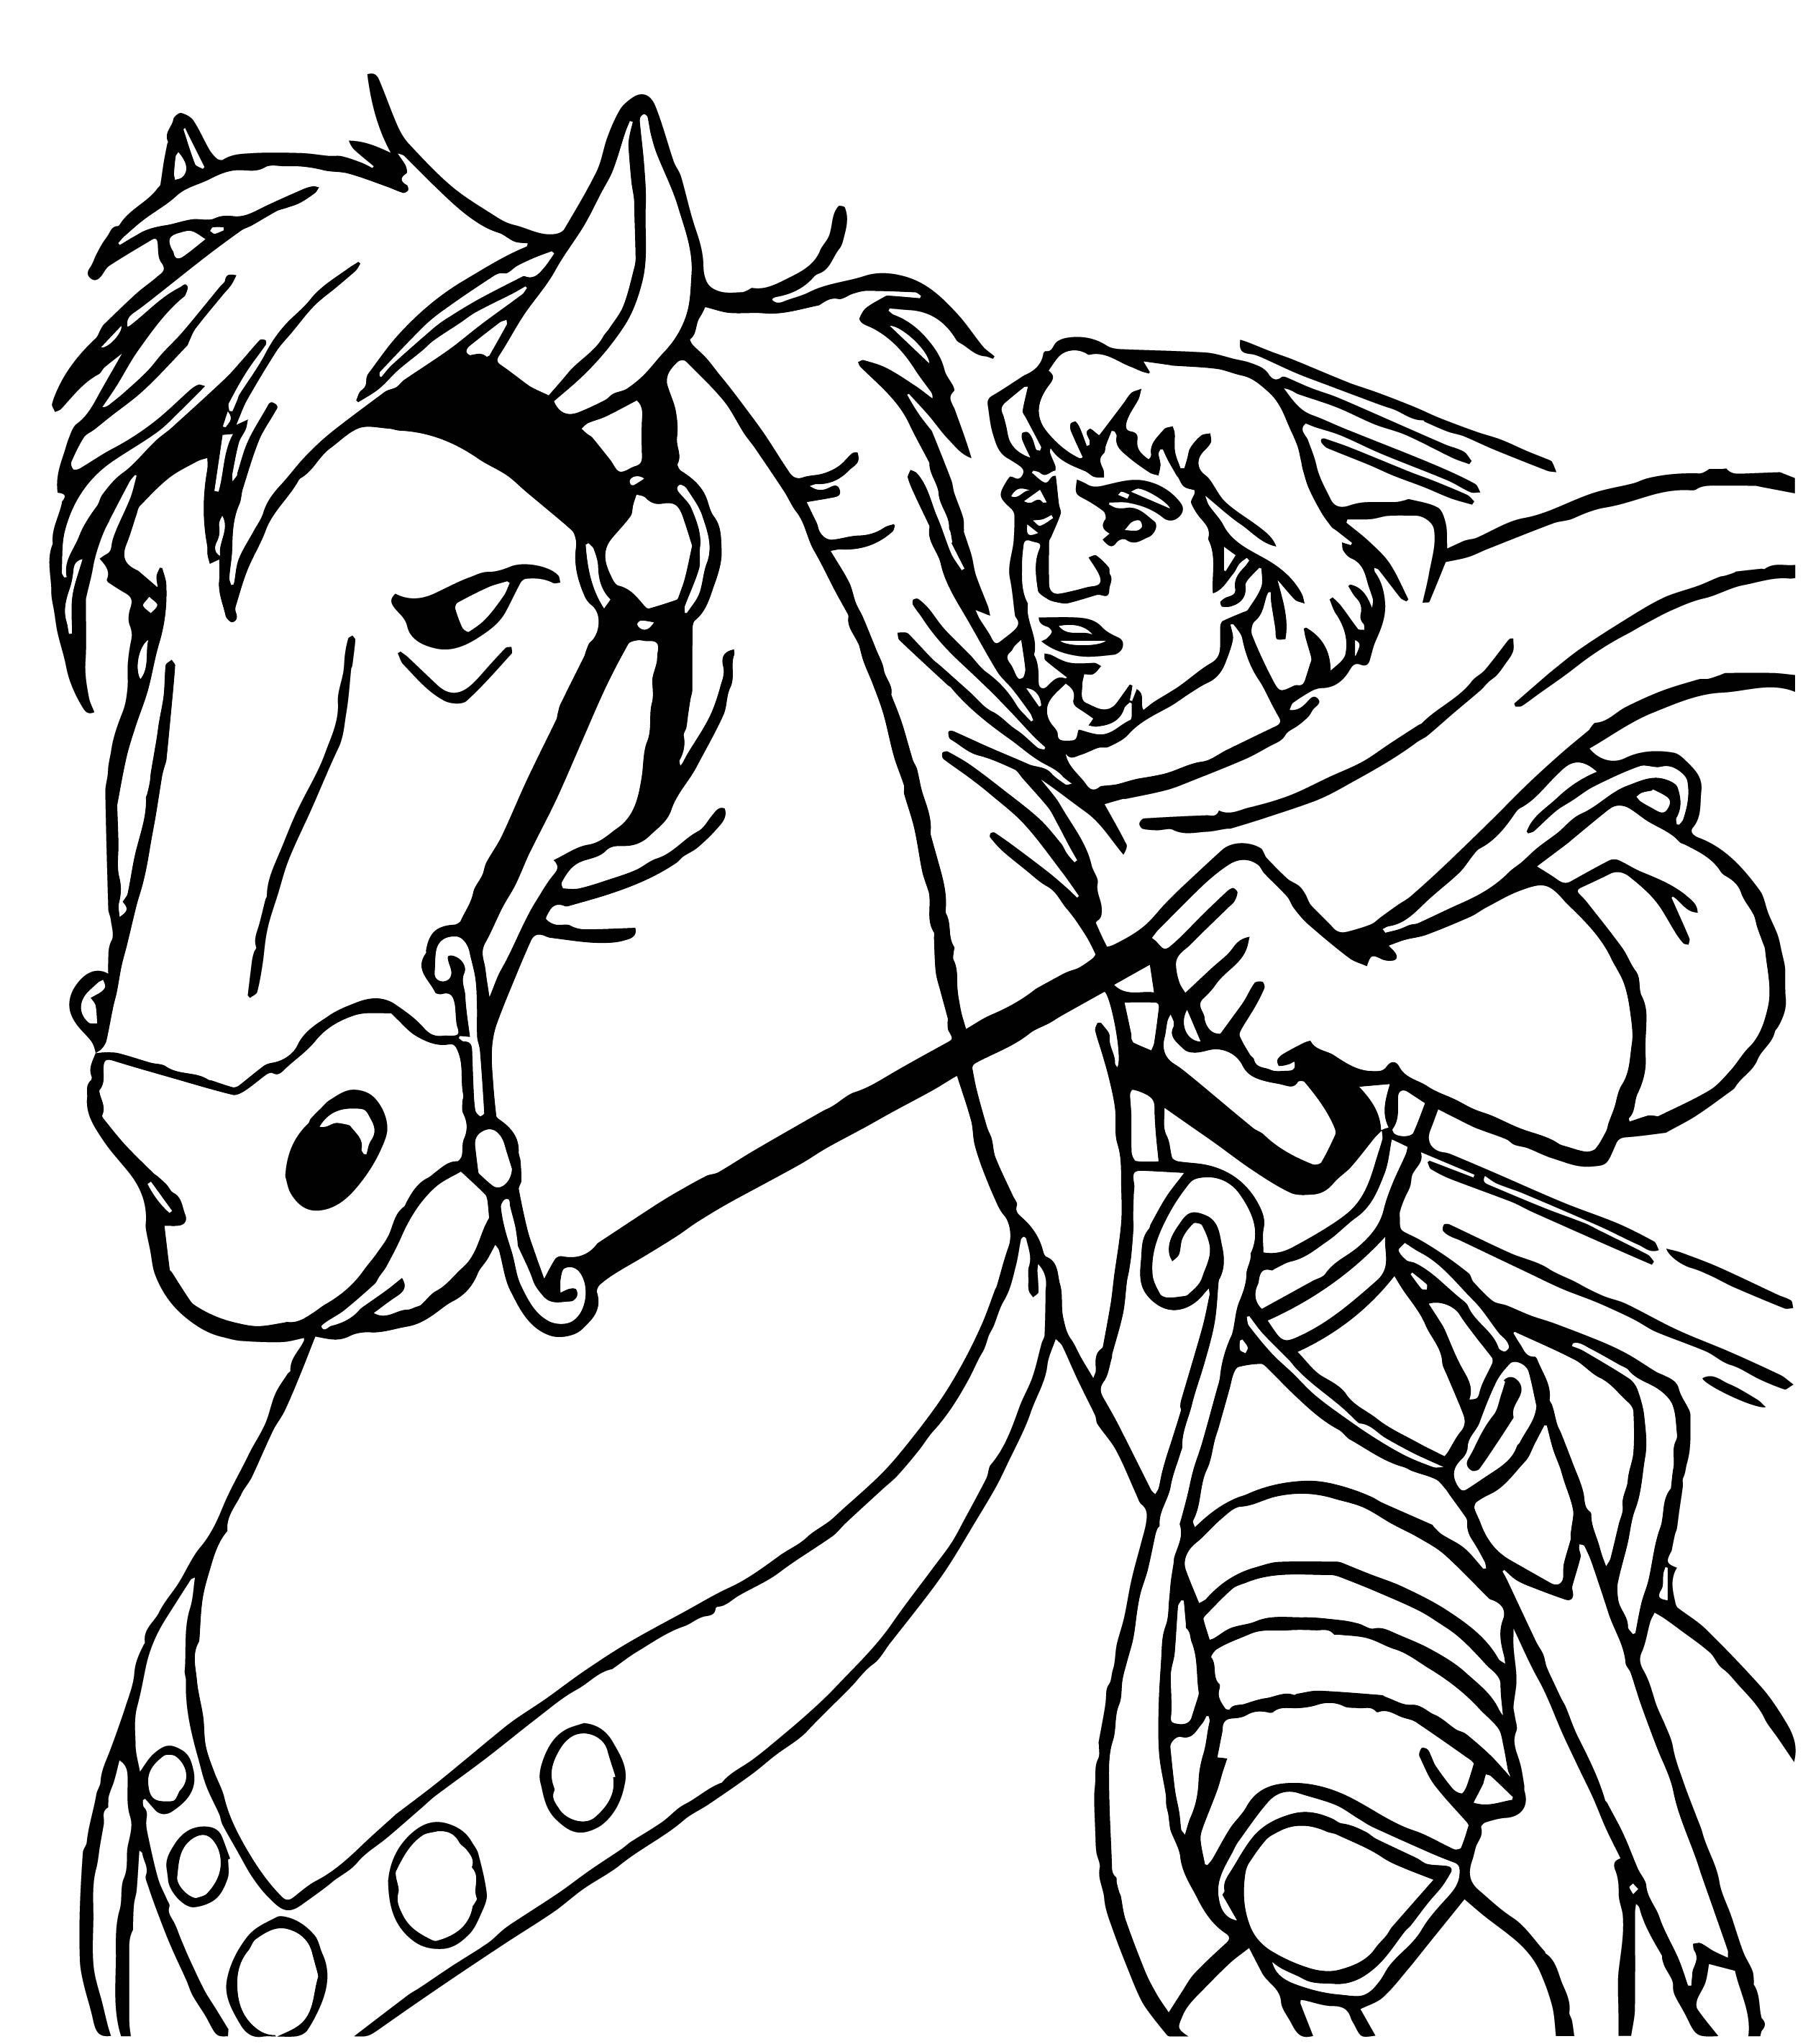 Принц на коне раскраска для детей